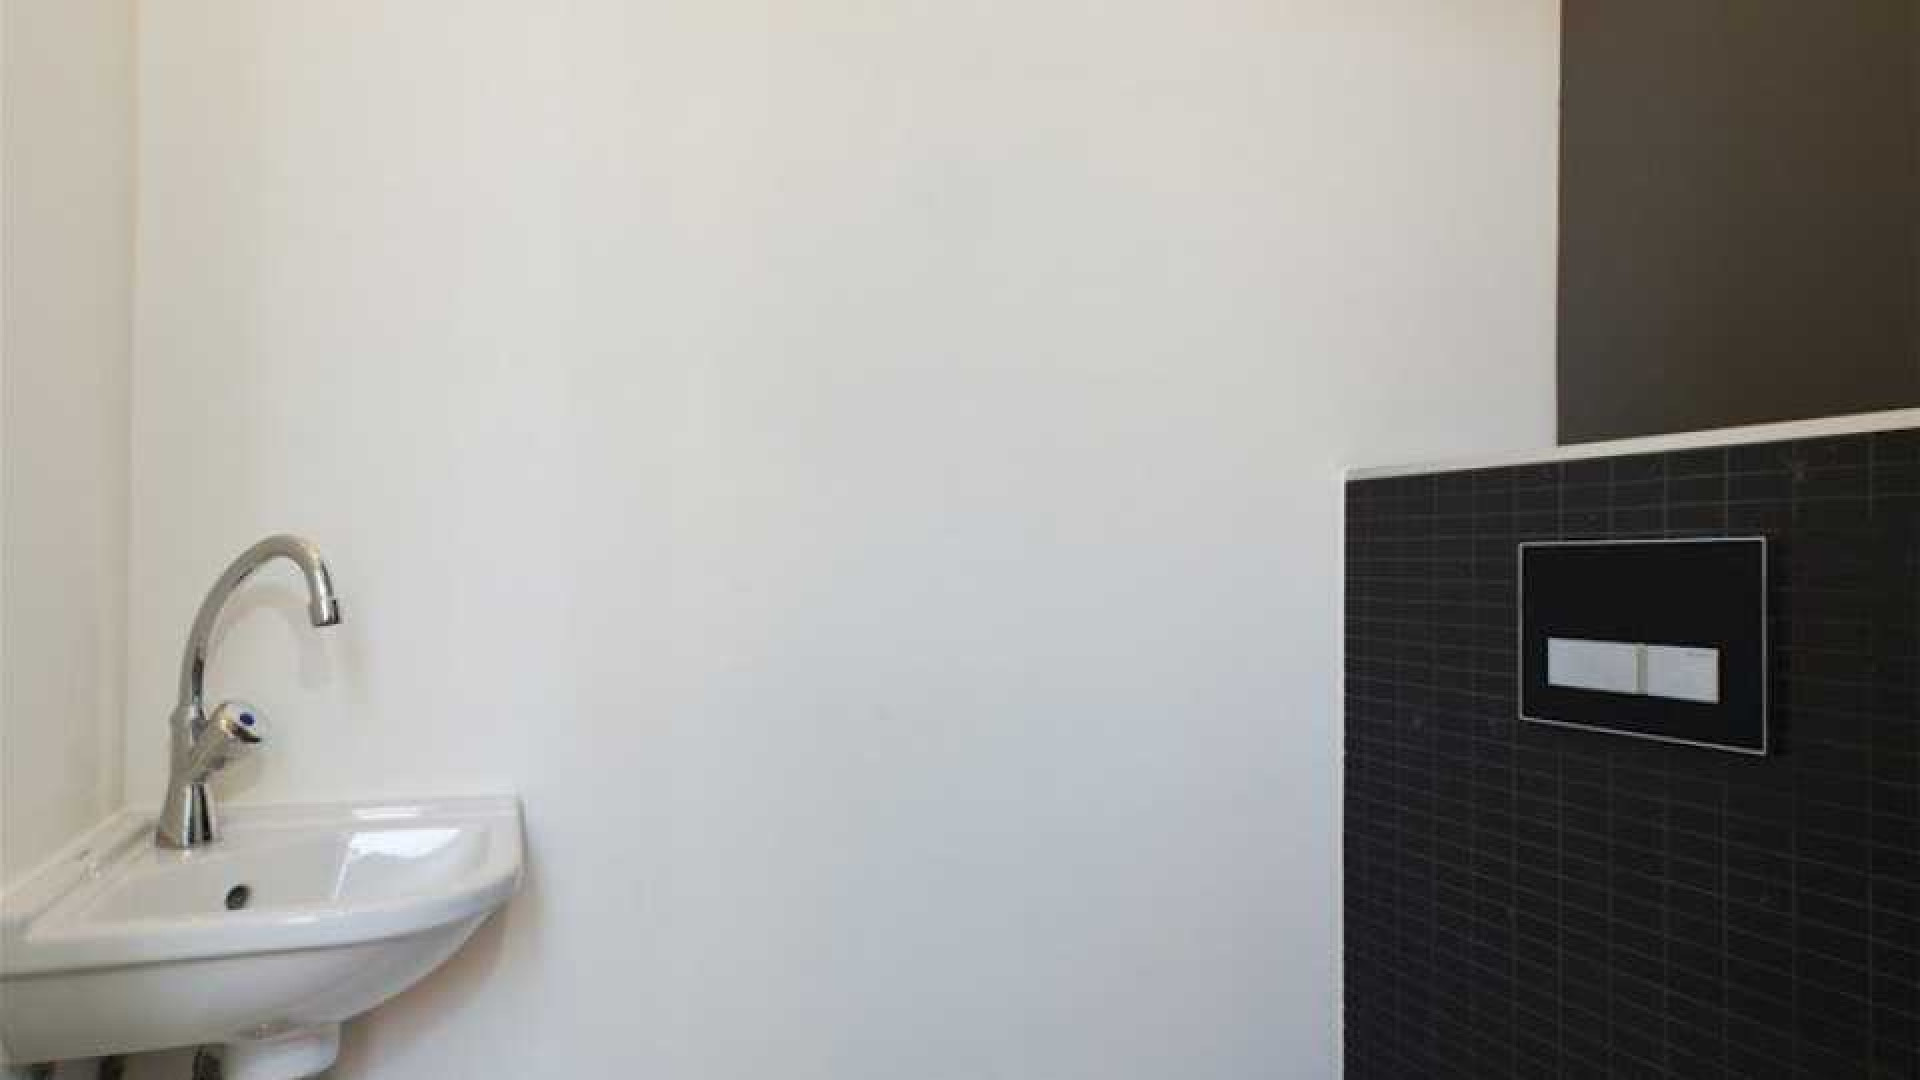 DJ Tiesto verlaagt huur van zijn luxe dubbele bovenhuis in Amsterdam. 7